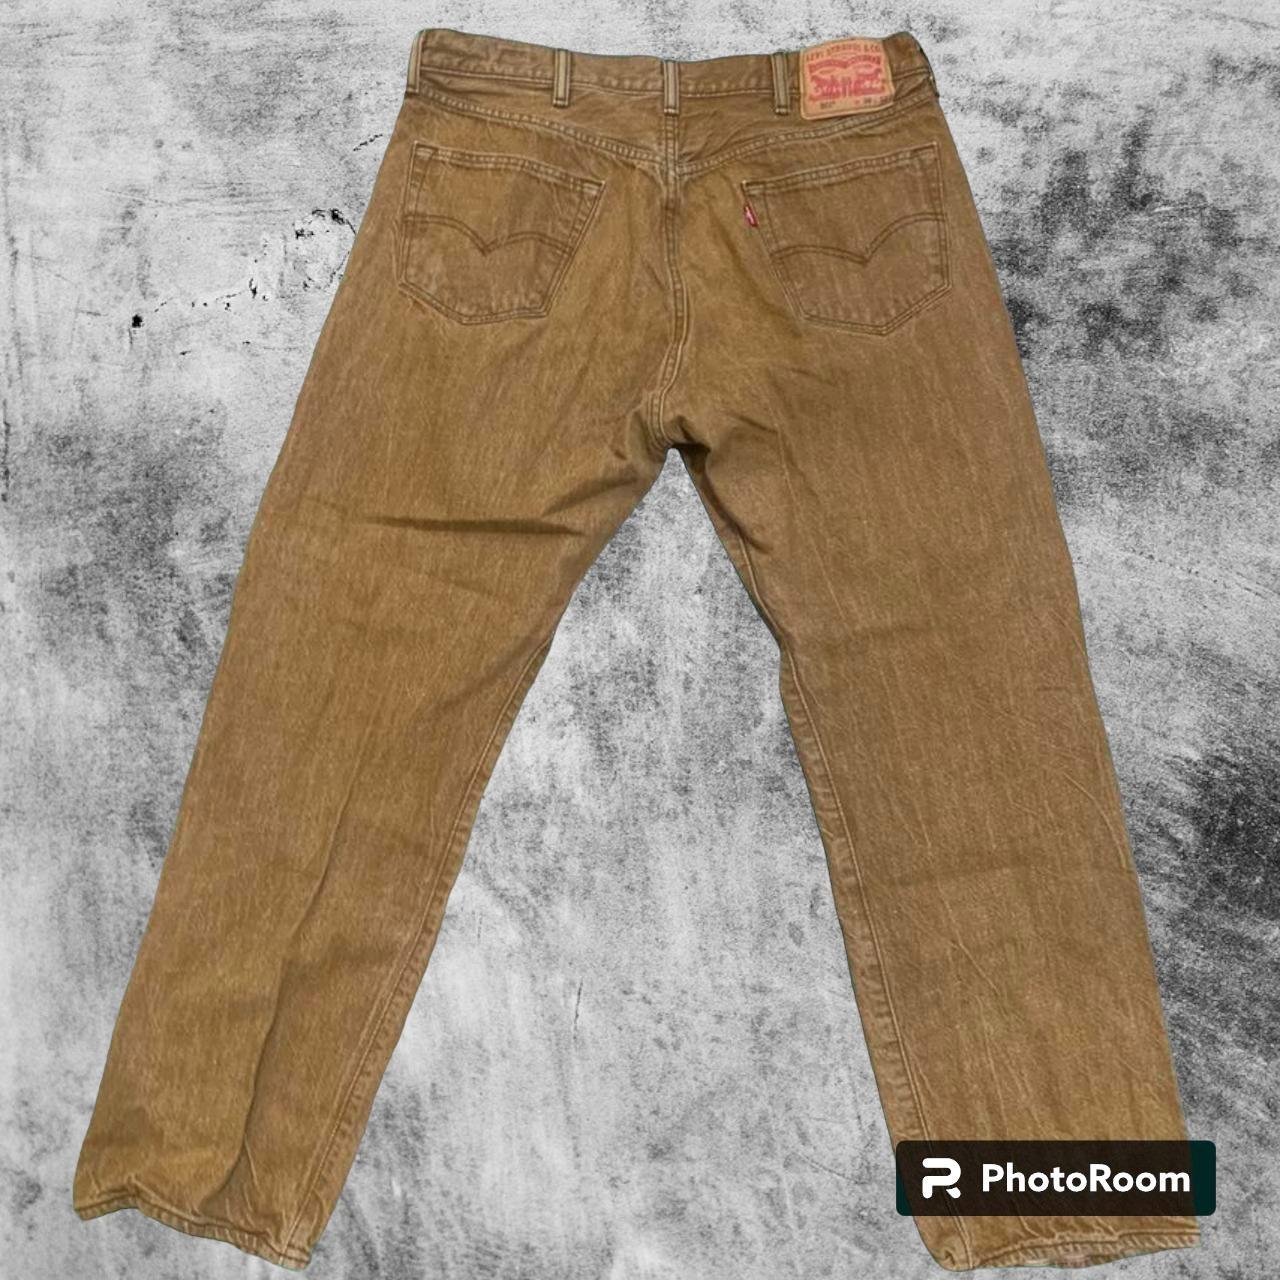 Vintage Brown 501 Levis Jeans - Depop